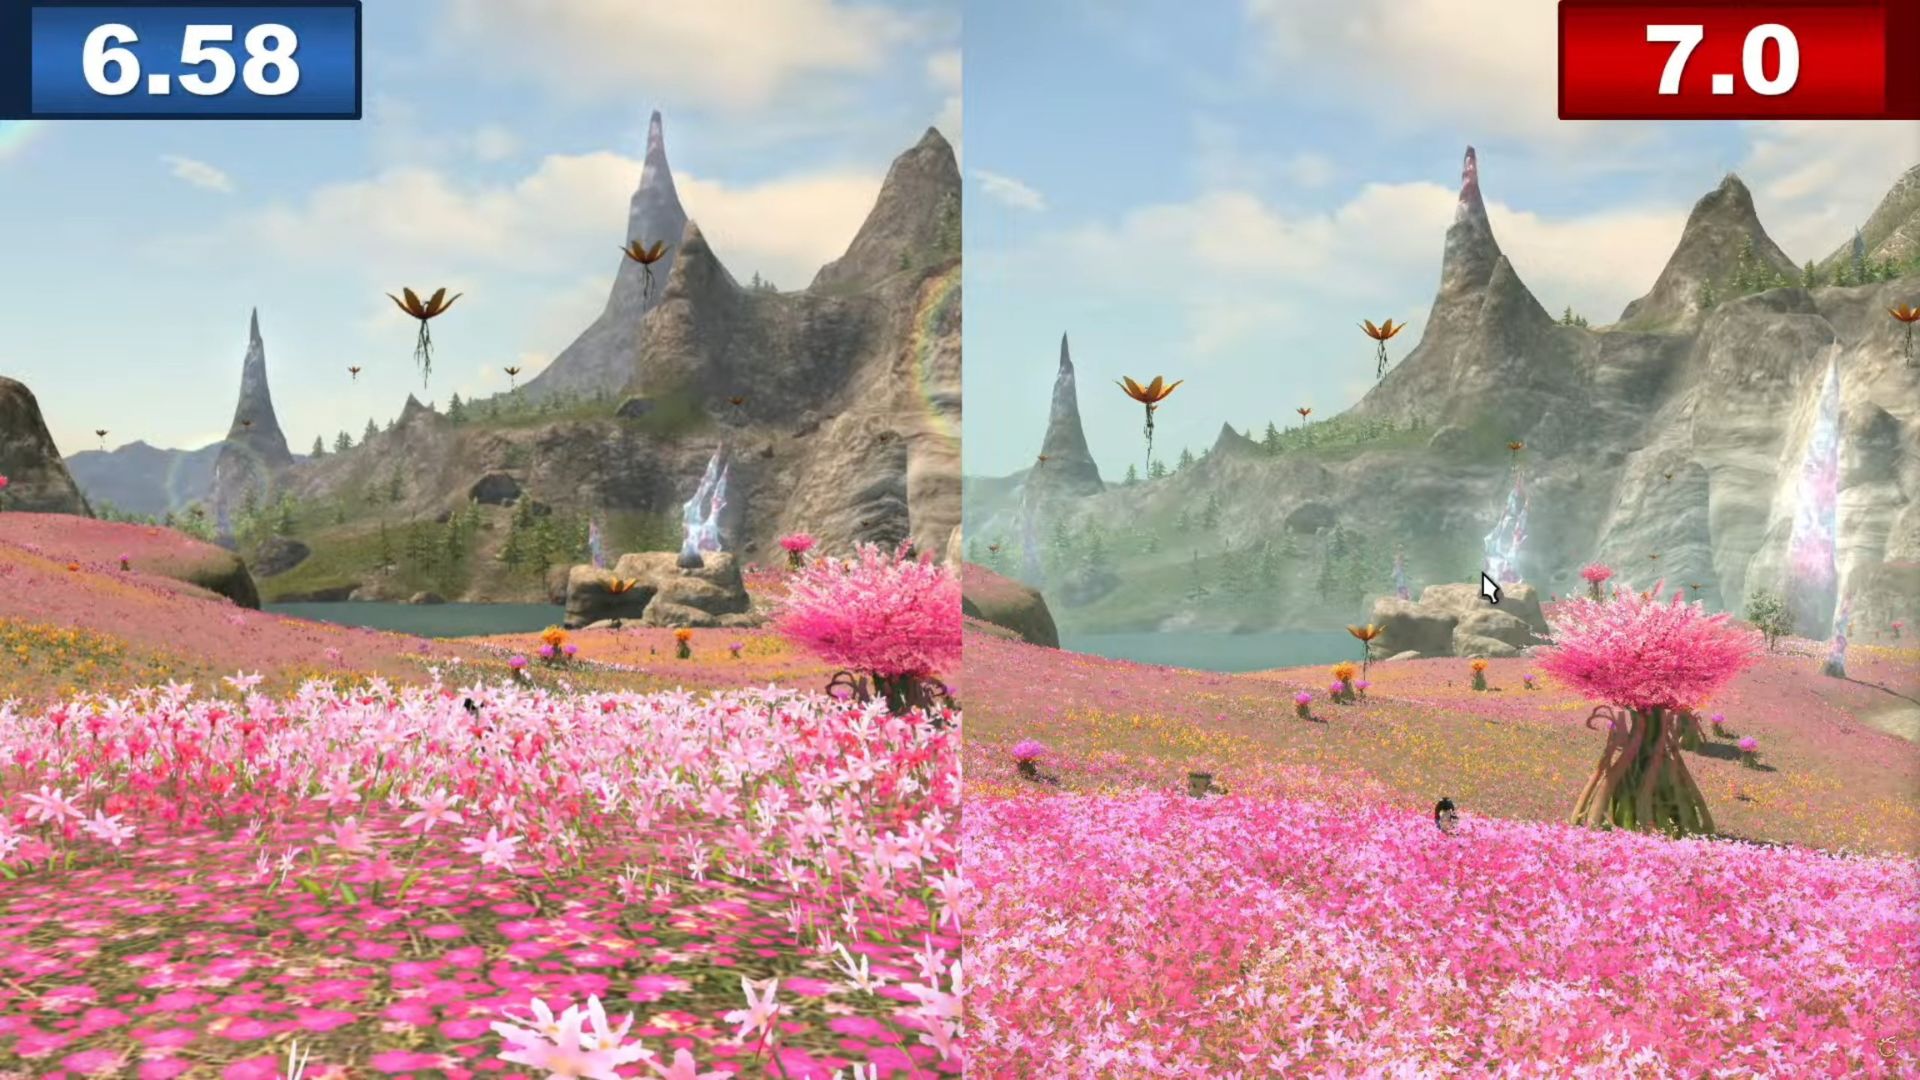 Benchmark Final Fantasy 14 Dawntrail: Zwei Aufnahmen von Feldern mit rosa Blumen, die rechte ist von besserer Qualität als die linke